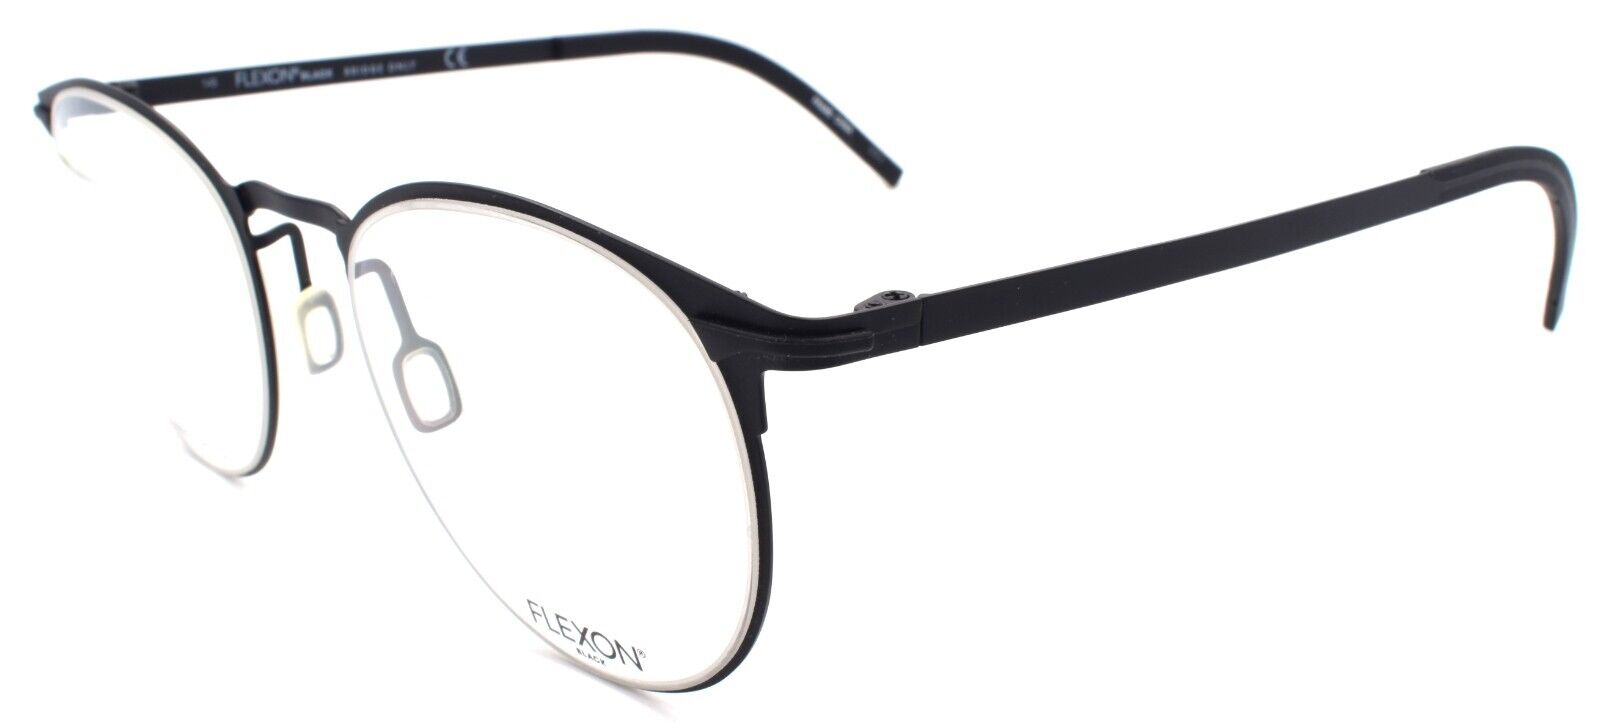 1-Flexon B2000 001 Men's Eyeglasses Black 50-20-145 Flexible Titanium-883900203210-IKSpecs